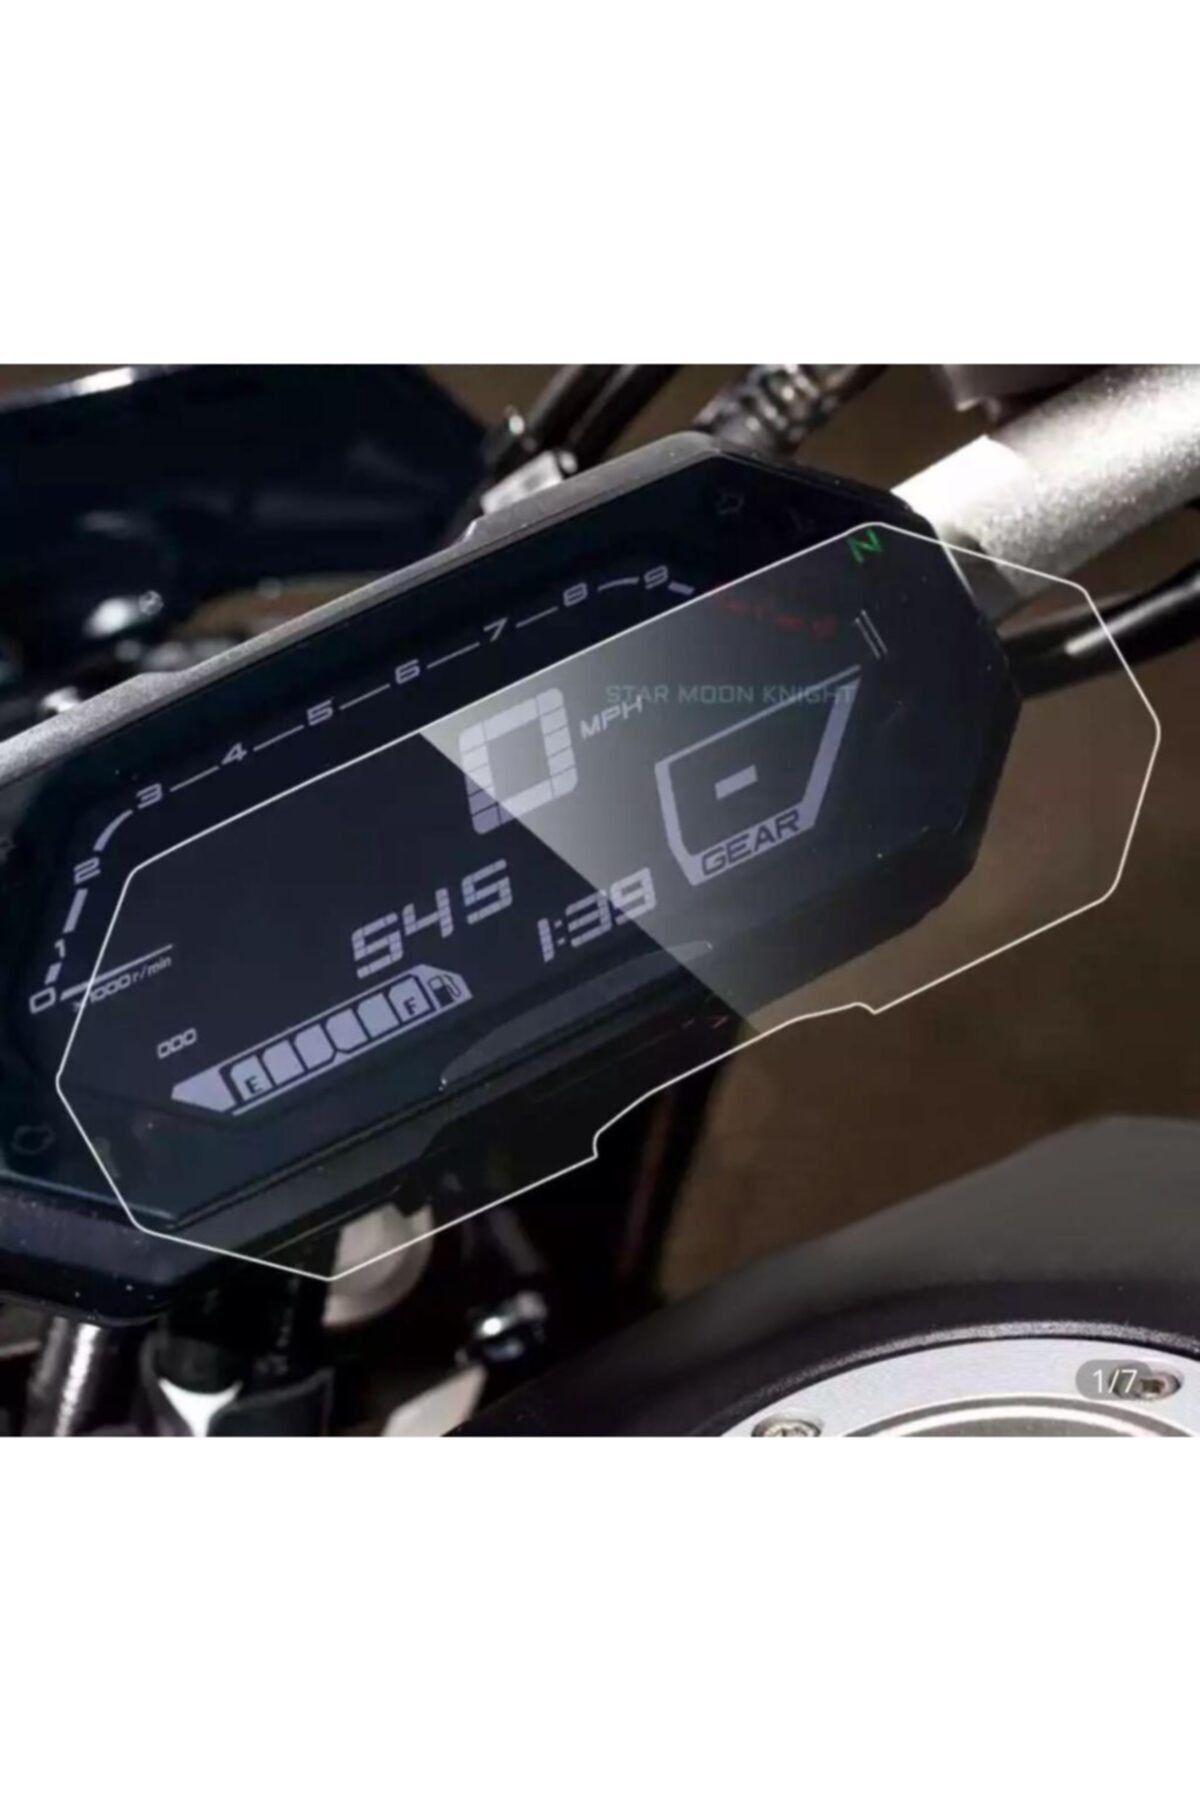 OLED GARAJ Yamaha Yeni MT-07 İçin Uyumlu Gösterge Temperli Nano Koruyucu,